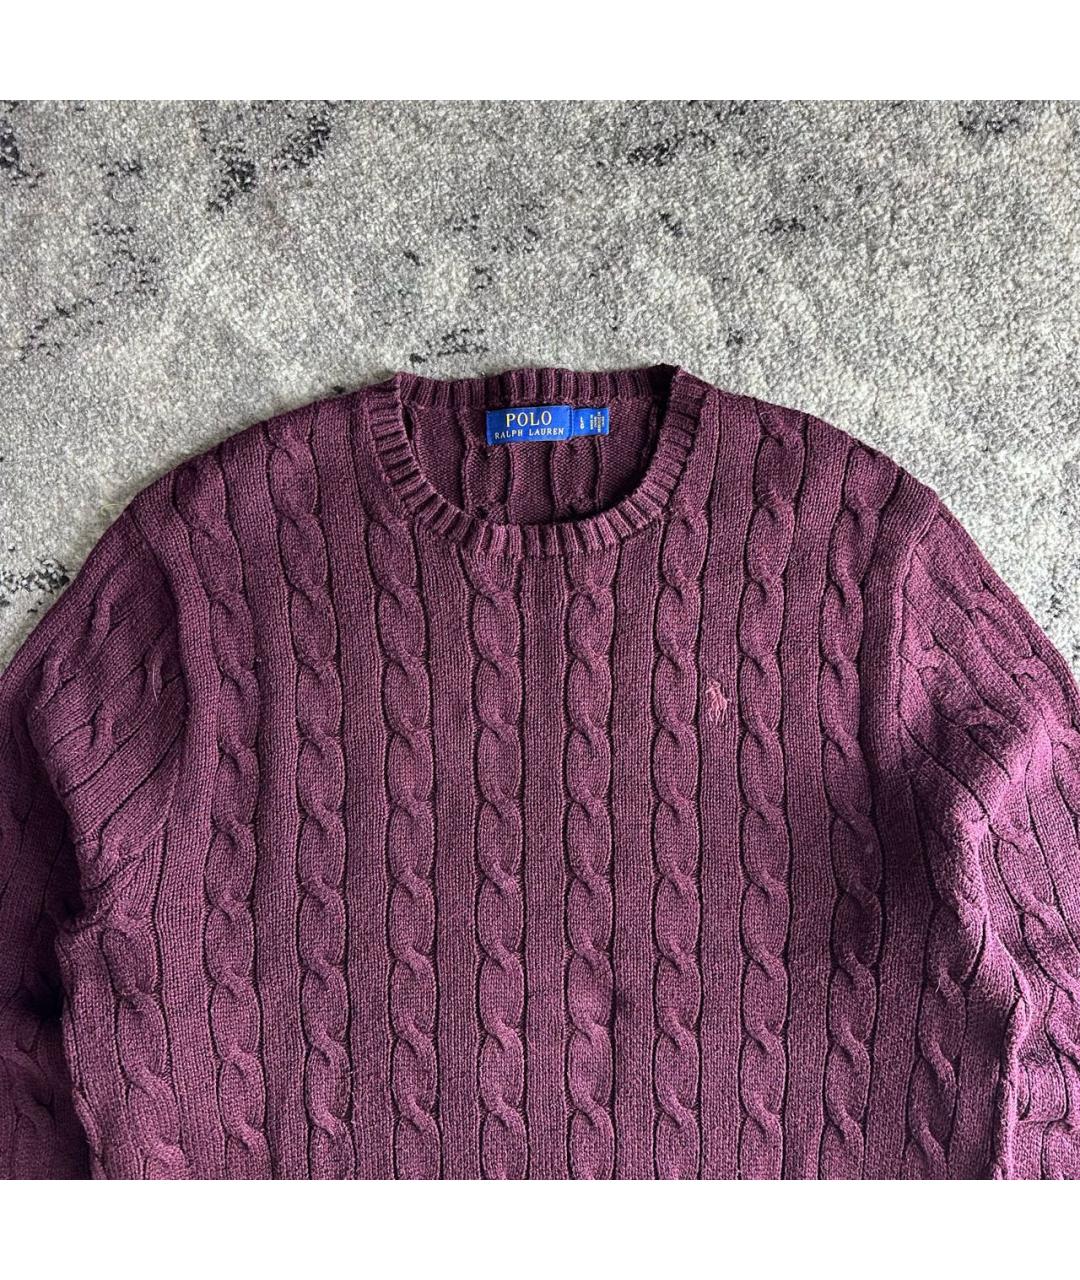 POLO RALPH LAUREN Бордовый хлопковый джемпер / свитер, фото 2